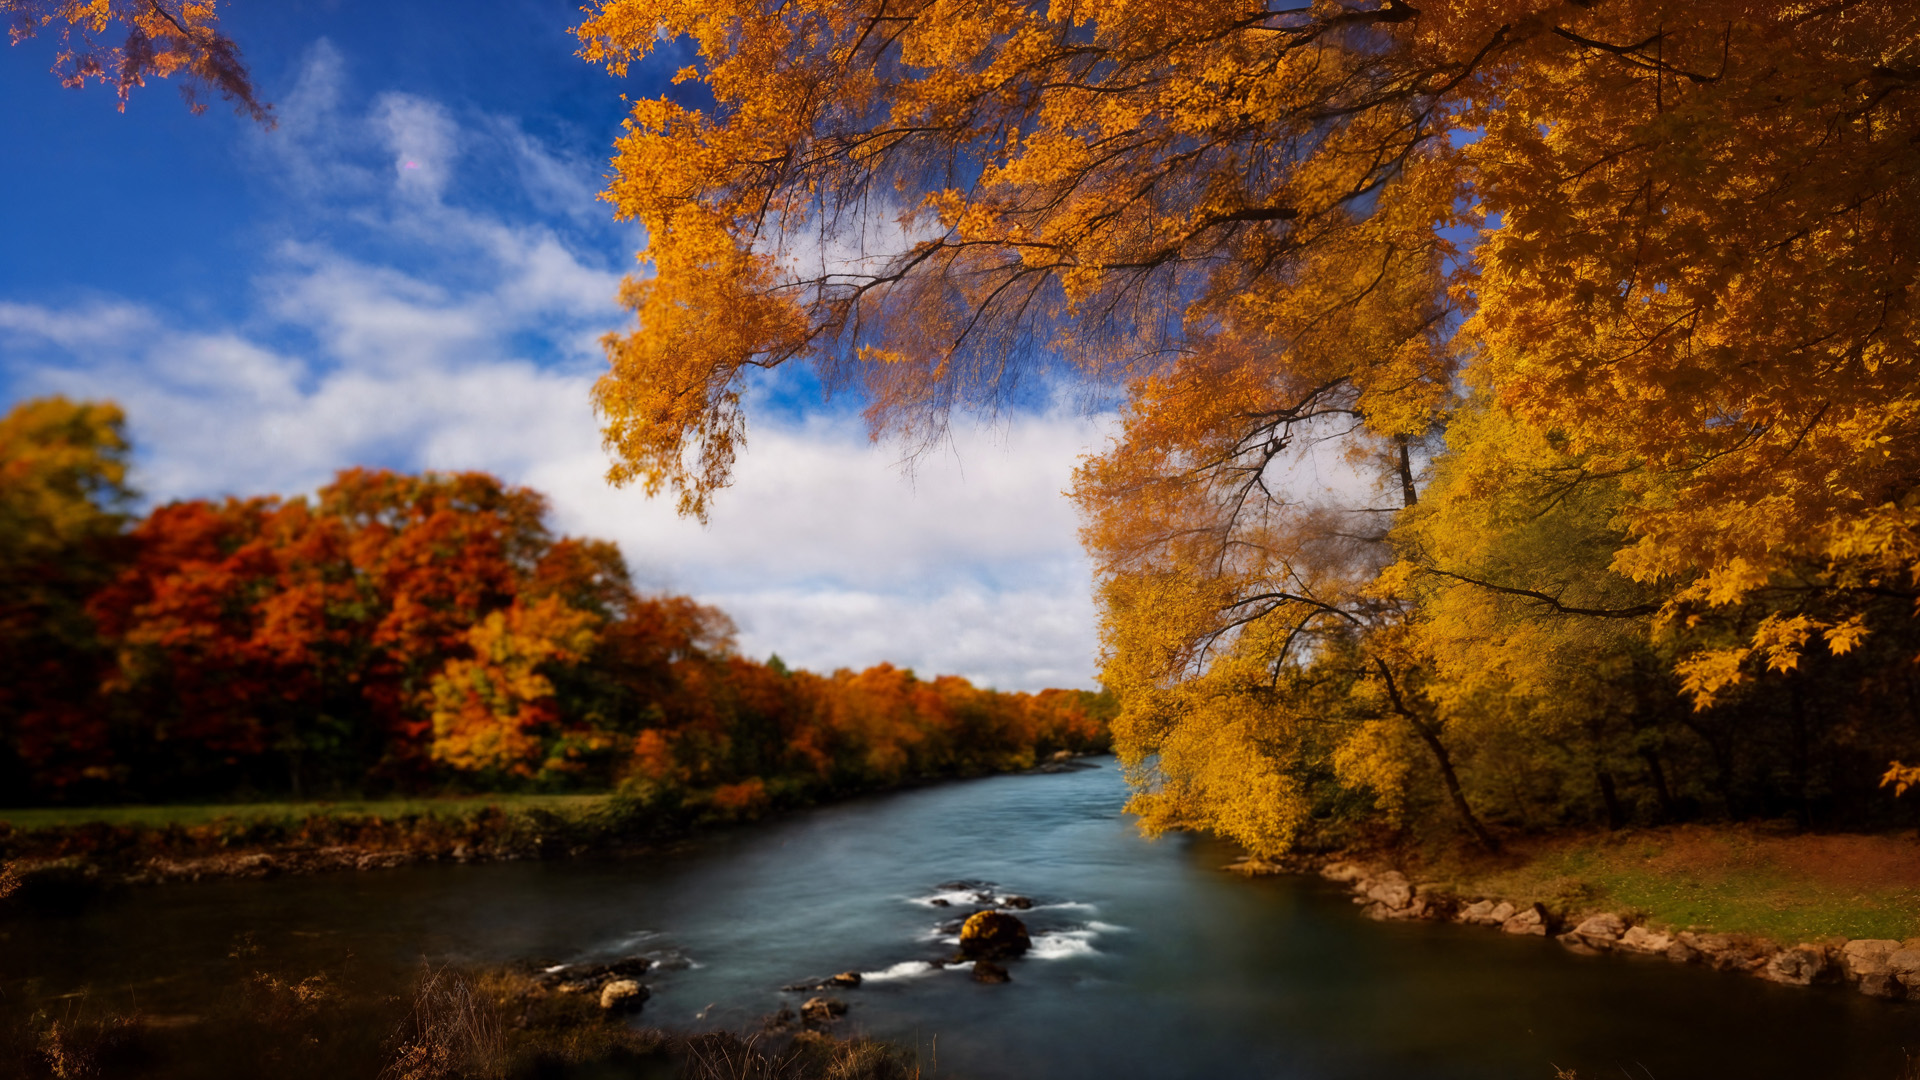 rzeka, jesień, drzewa, wielobarwne liście, odbicia, srebrzysta woda, czerwień, pomarańcz, złoto, natura, ulotność, cykliczność, szczegóły, świat, życie